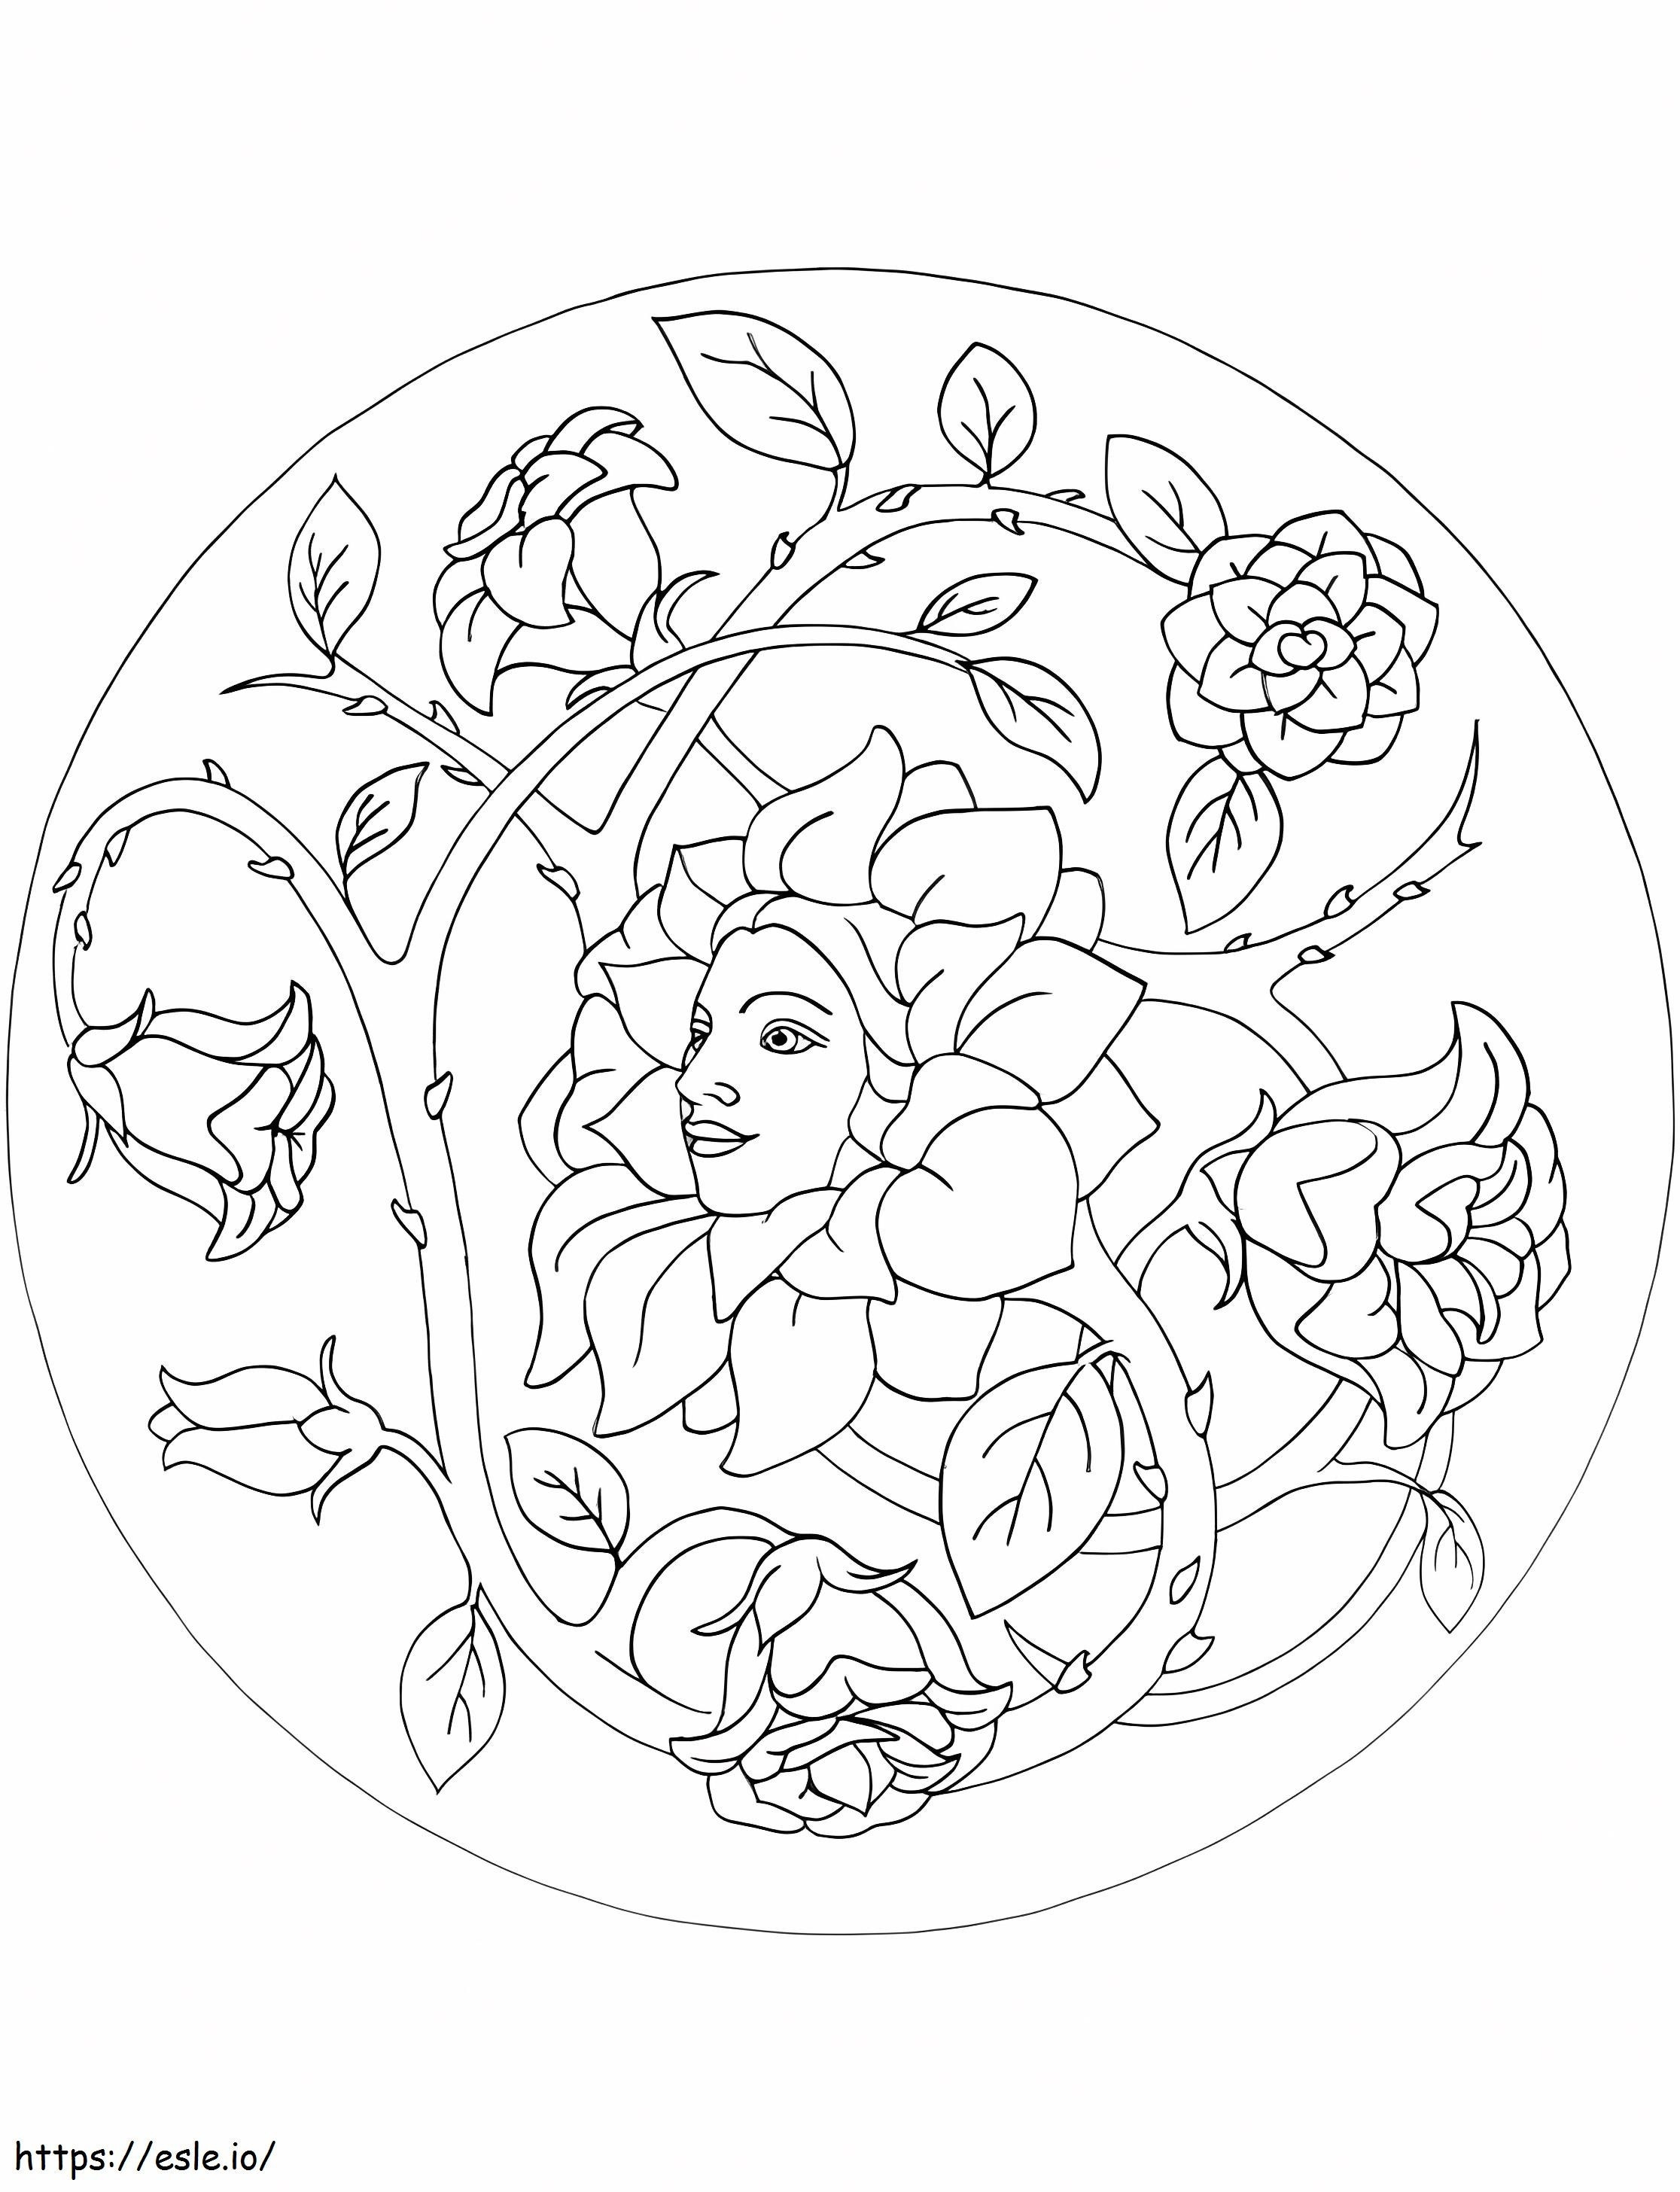 Mandala floreale stampabile gratuitamente da colorare